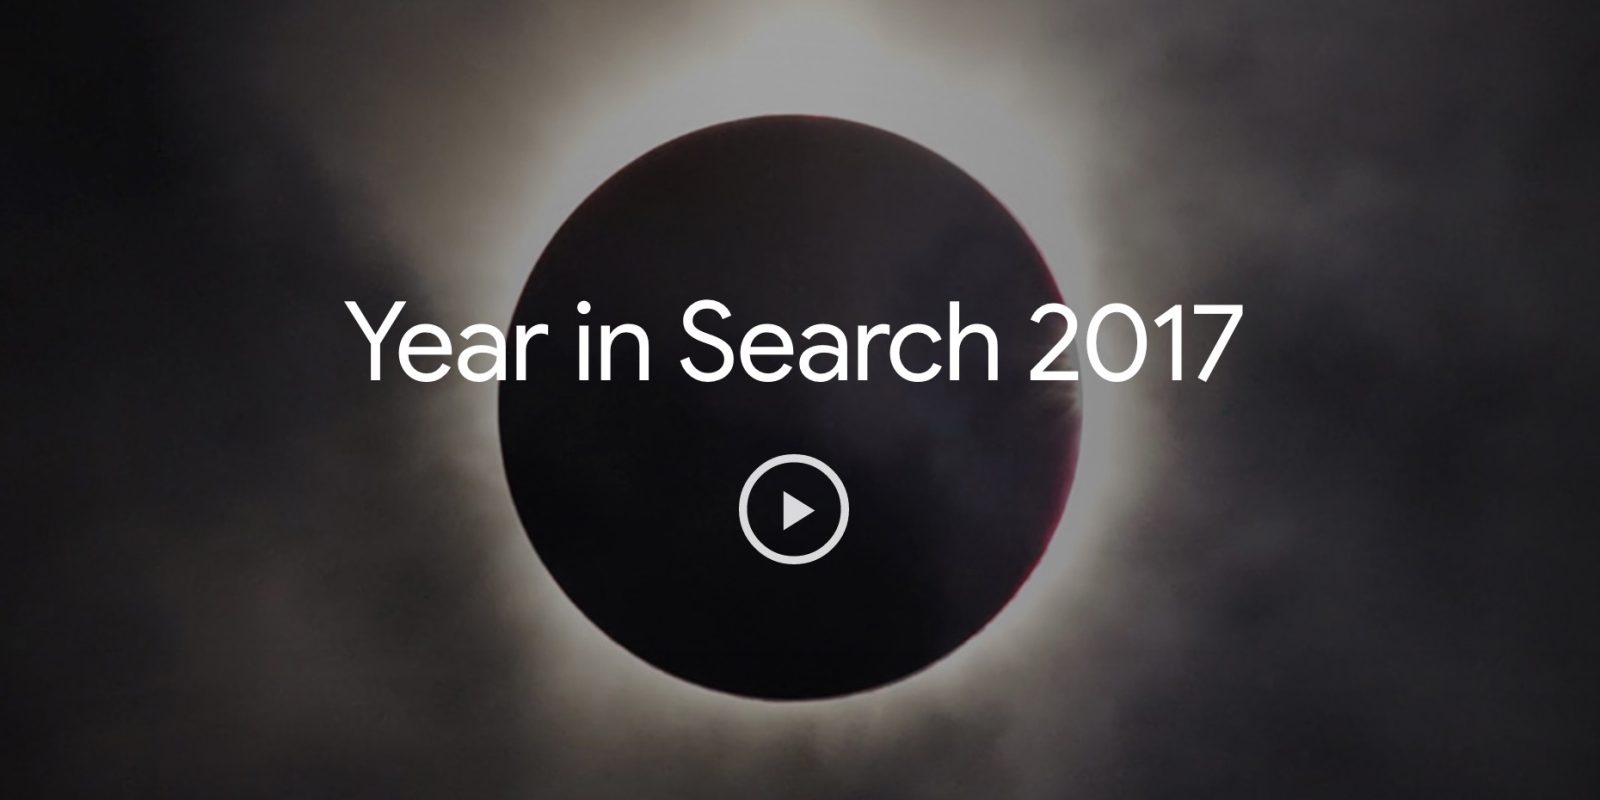 Google ปล่อยวิดีโอ “หนึ่งปีกับการค้นหา 2017” : “เพลิงบุญ” มาแรงที่สุดในประเทศไทย